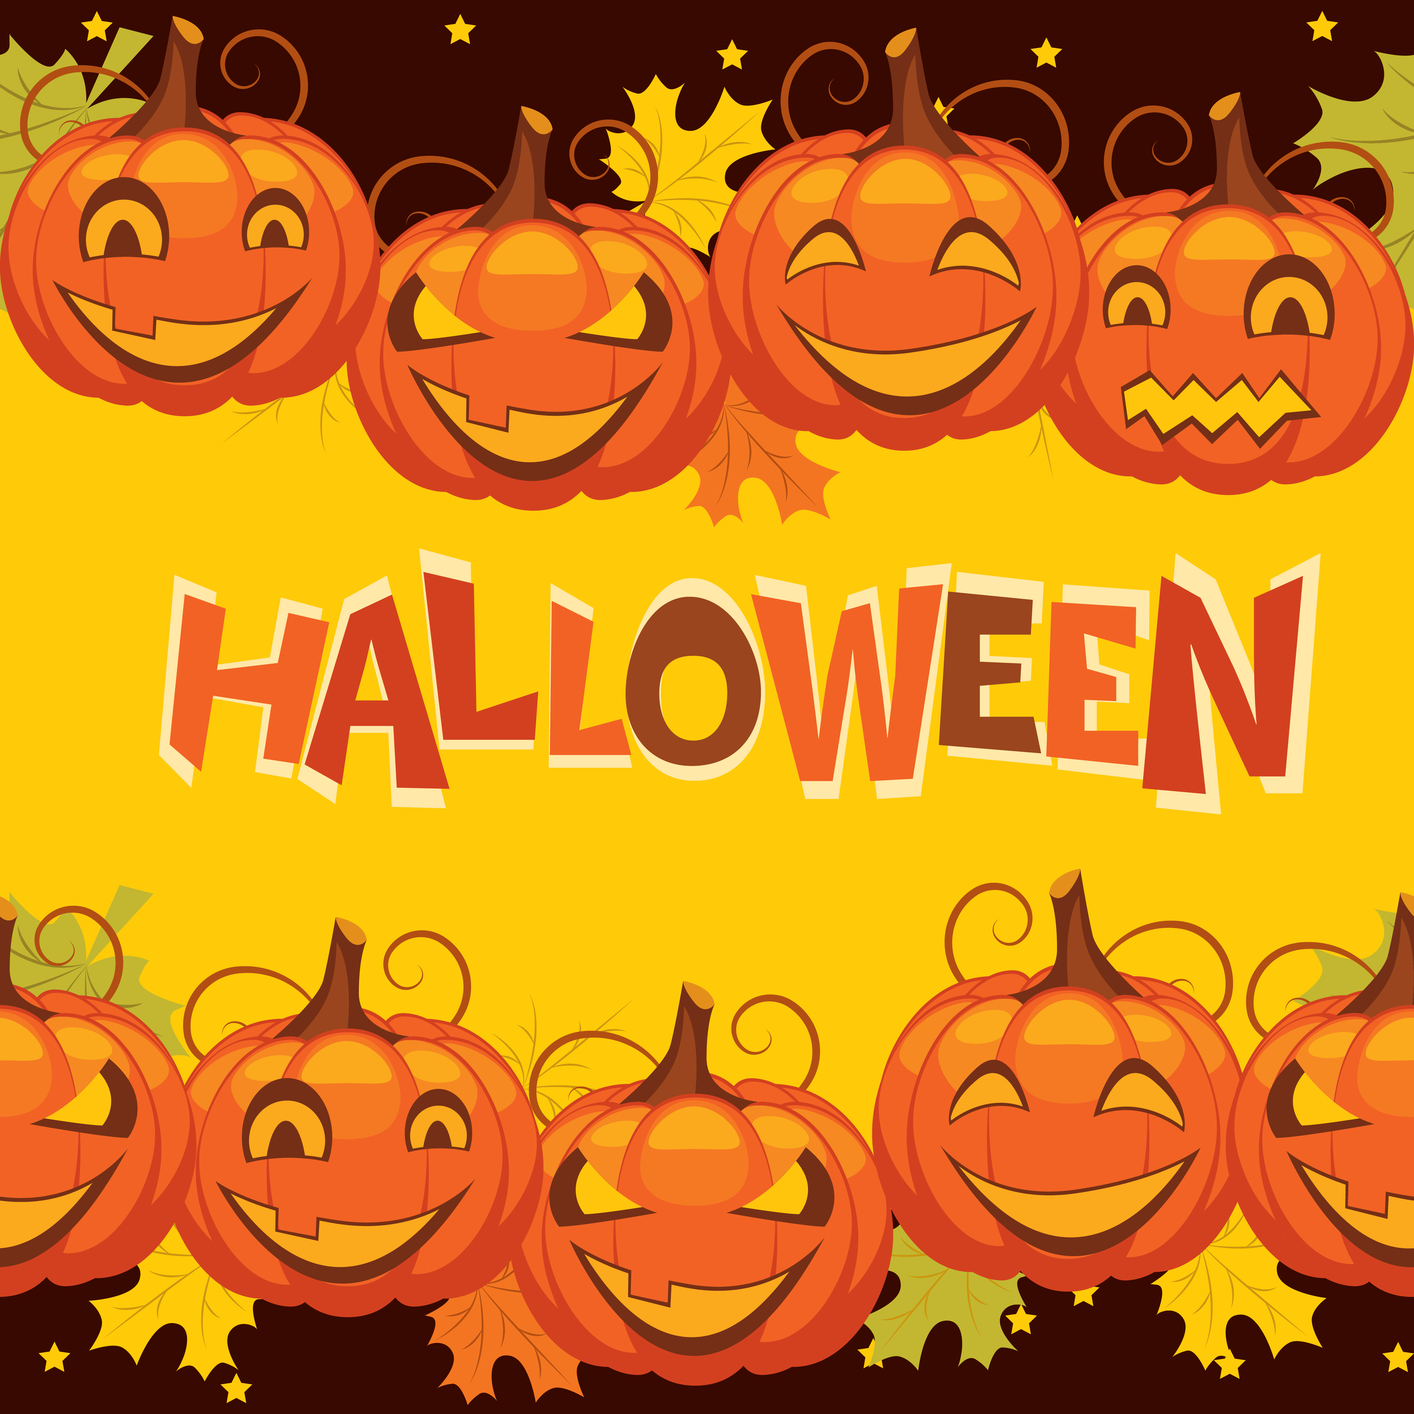 Free Halloween Vector Graphics